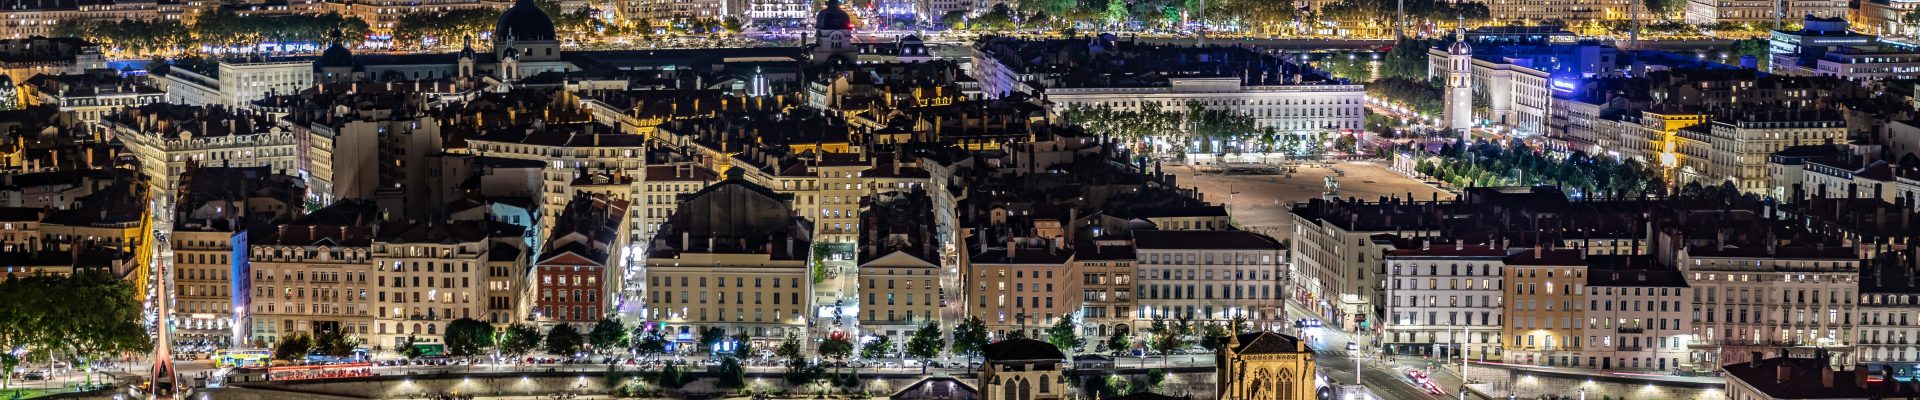 La ville de Lyon vue de nuit depuis la colline de Fourvière